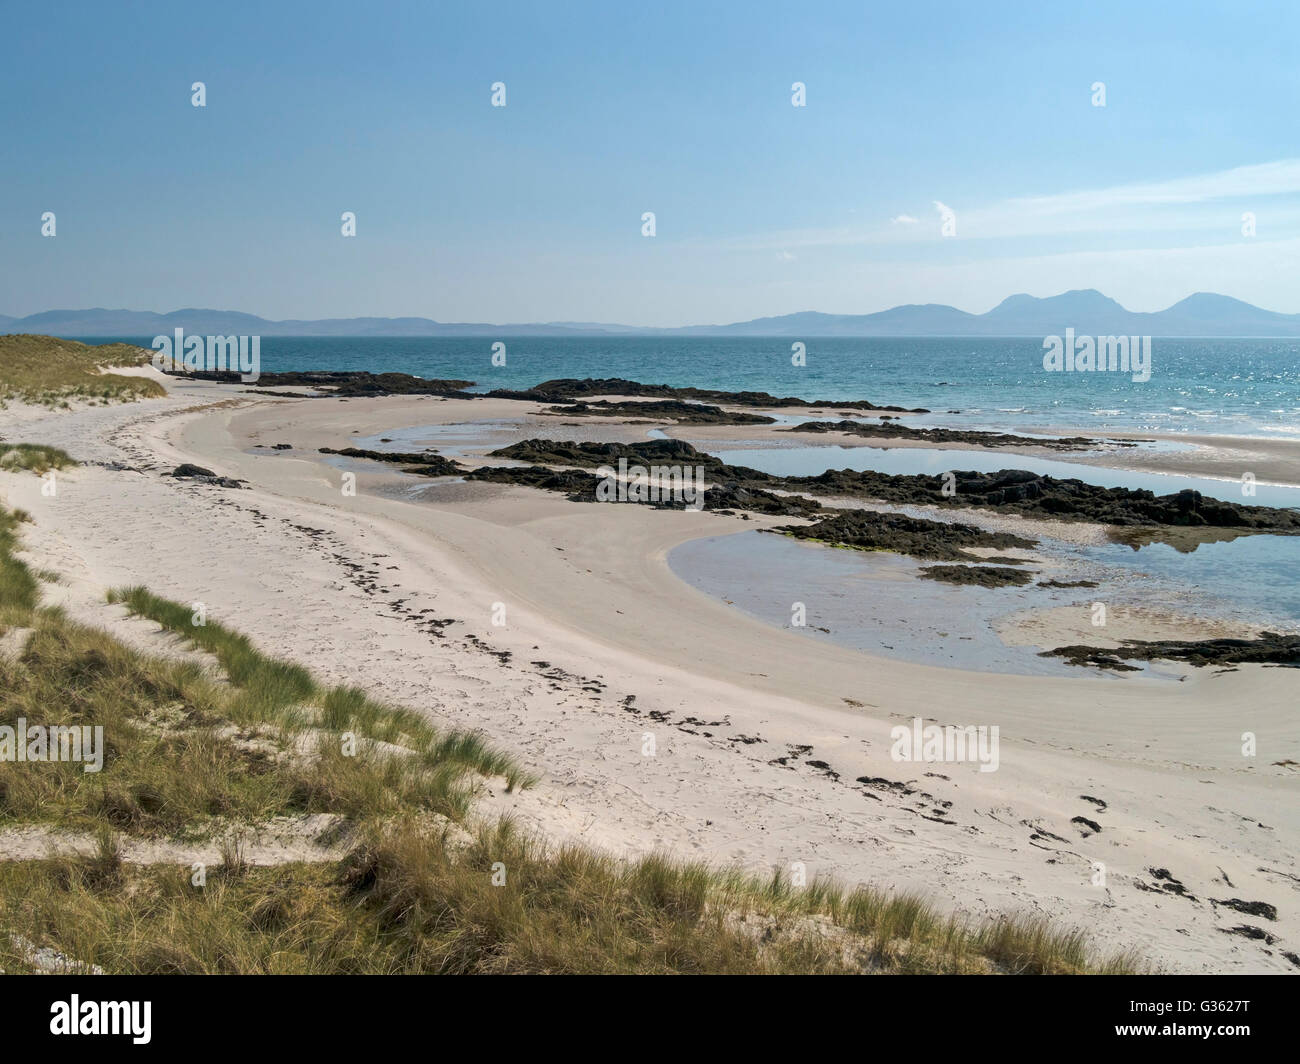 Weißen Sandstrand in der Nähe der Strang mit Isle of Jura in der Ferne Insel Colonsay, schottischen Hebriden, Schottland, Vereinigtes Königreich. Stockfoto